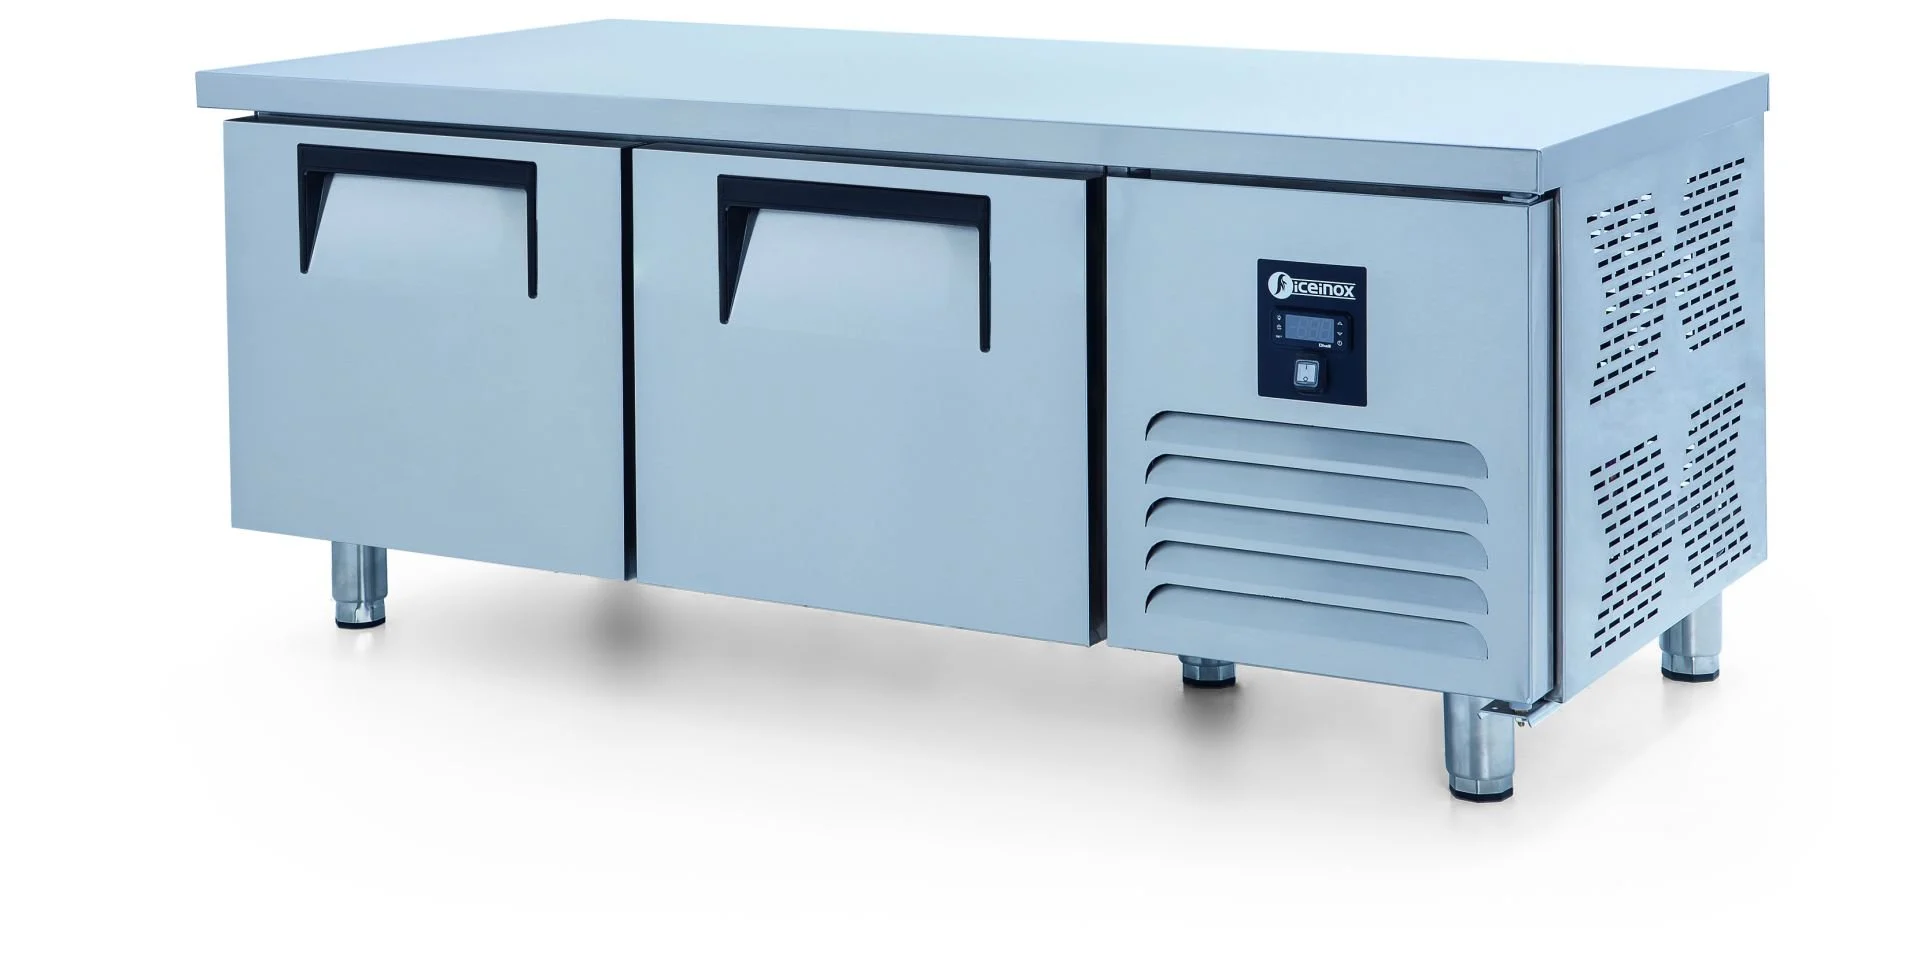 ICEINOX - Iceinox UTS 220 CR Pişirici Altı Buzdolabı, 2 Kapılı, 220 L